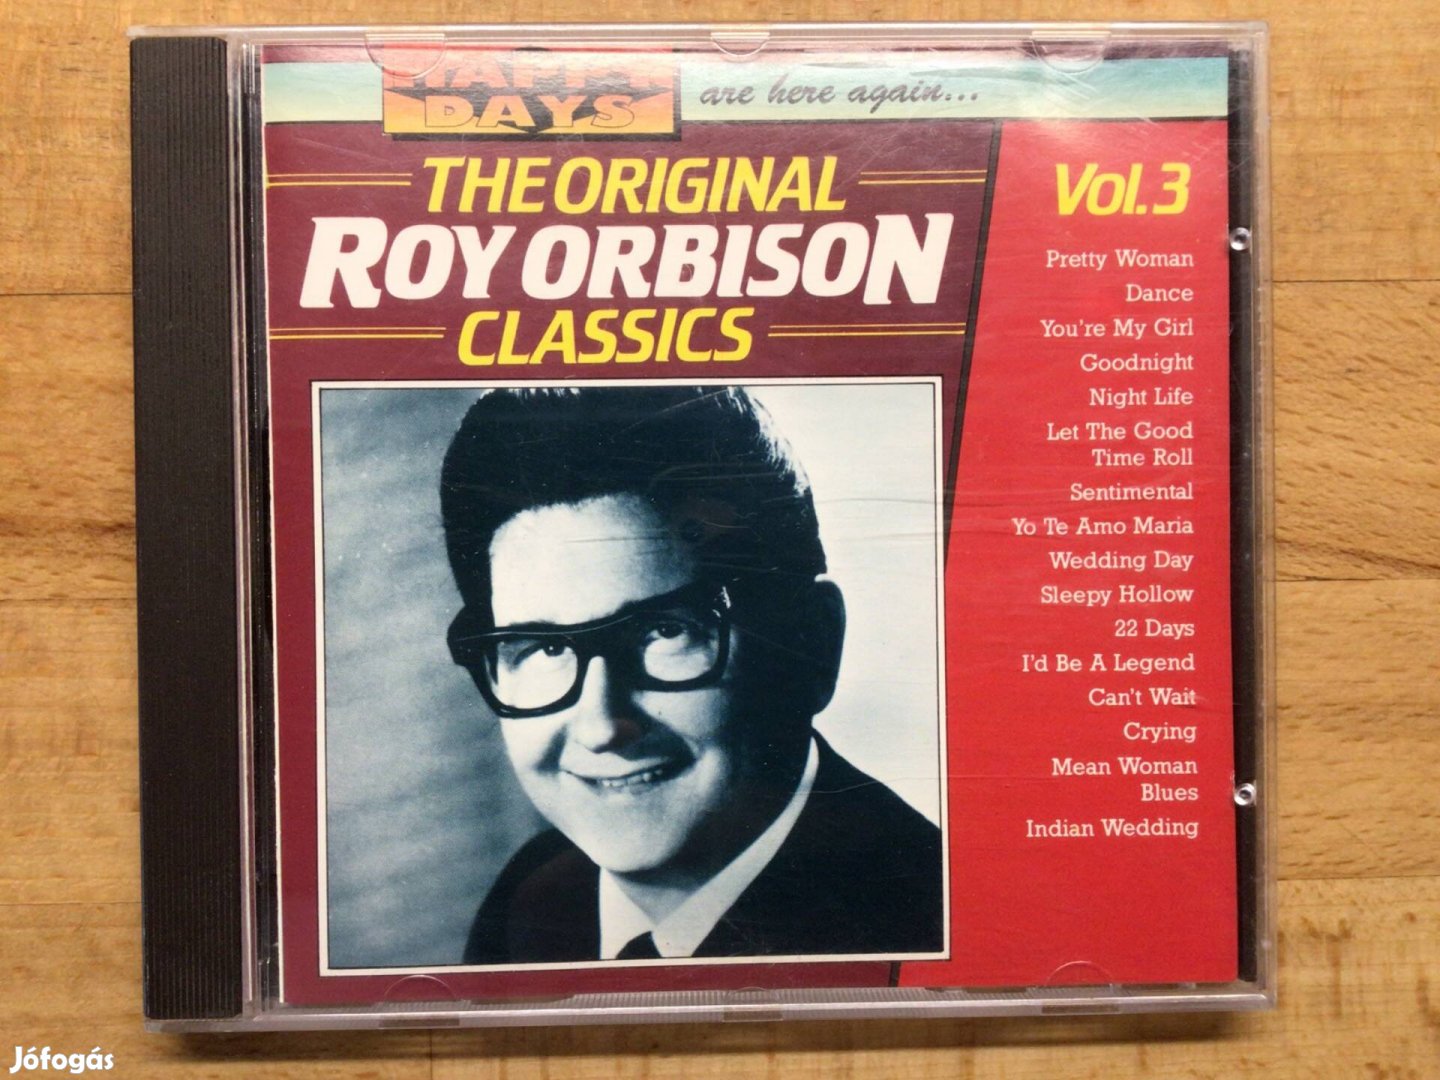 The Original Roy Orbison Classic